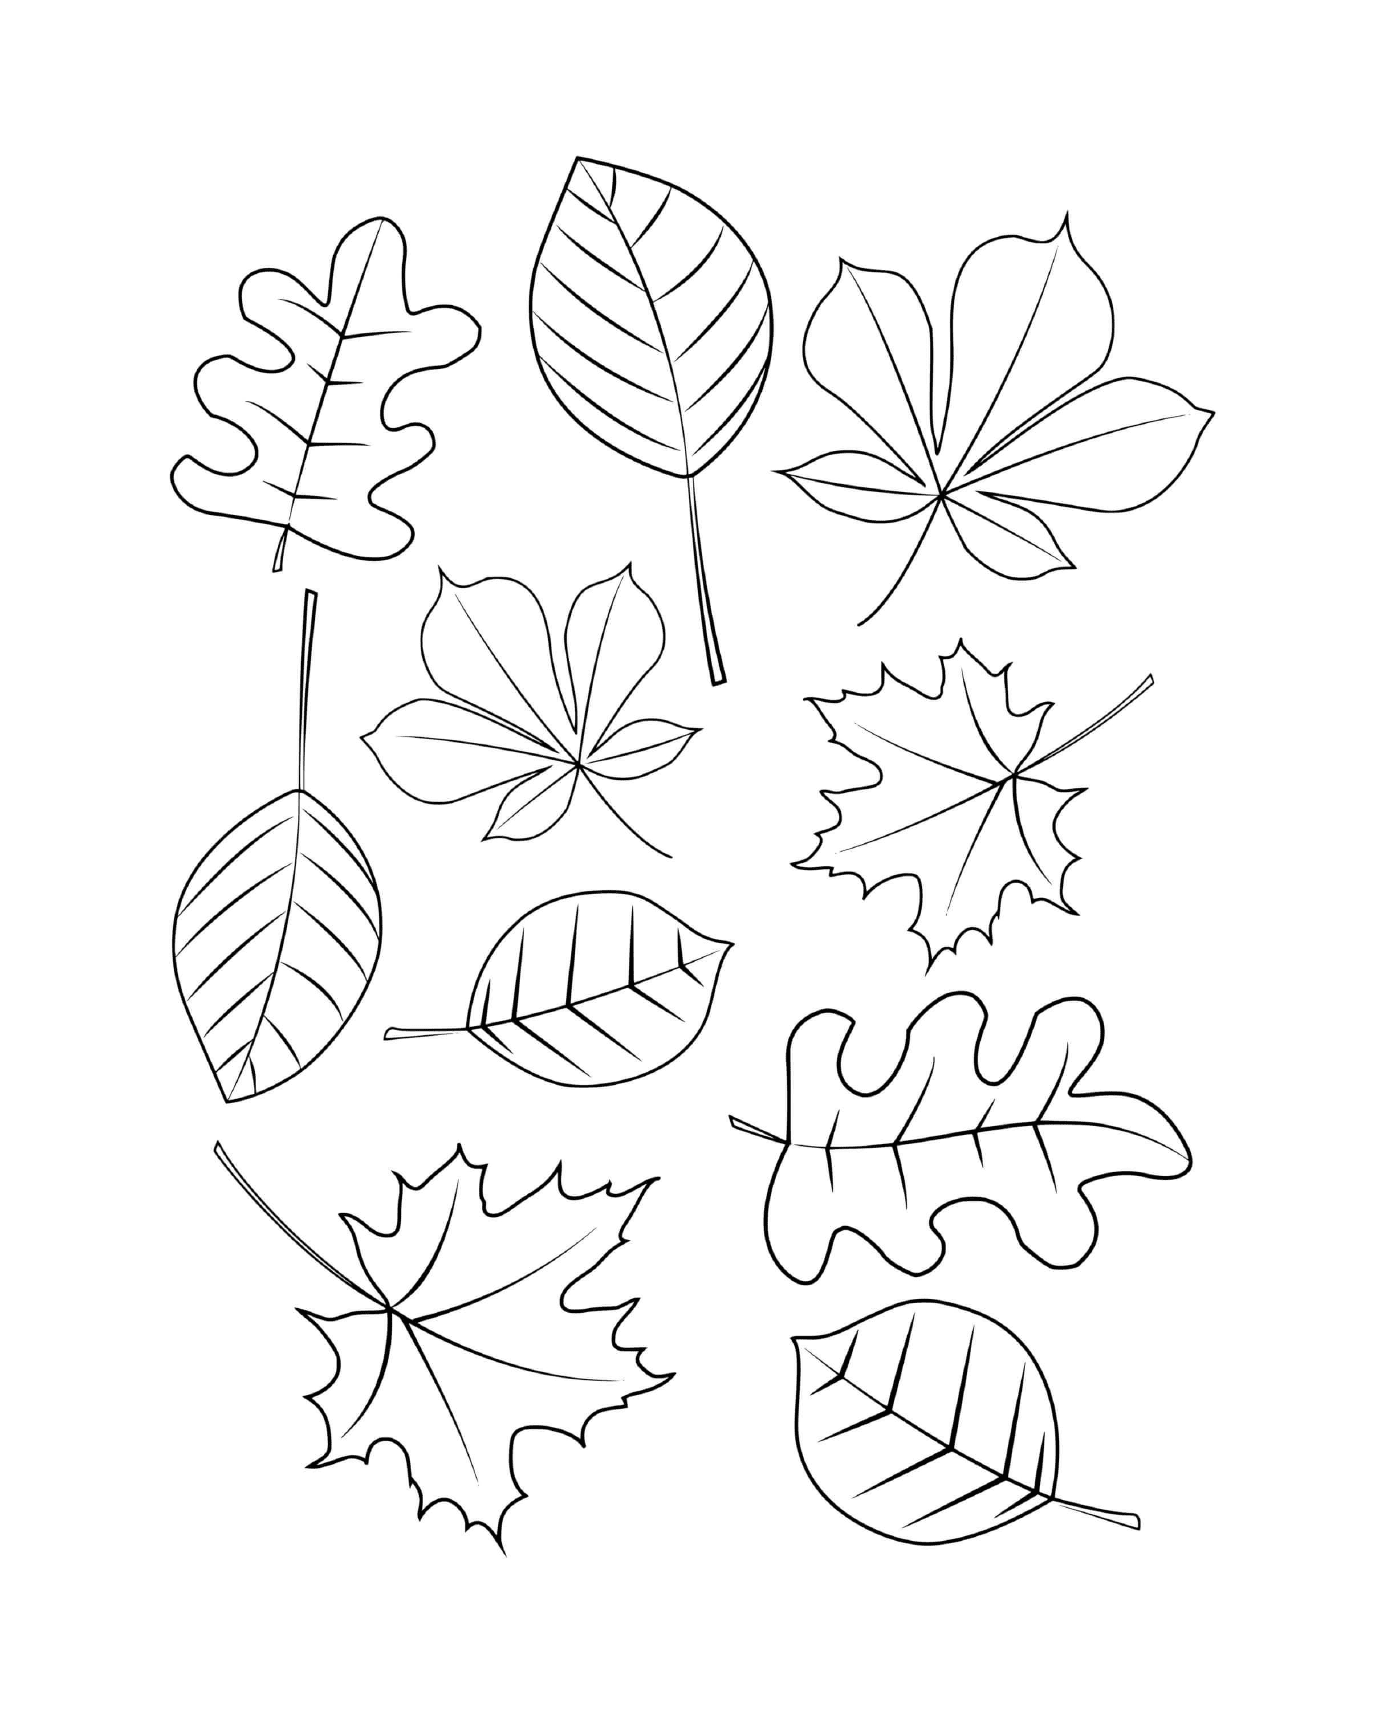  Verschiedene Arten von Papier gezeichnete Blätter 